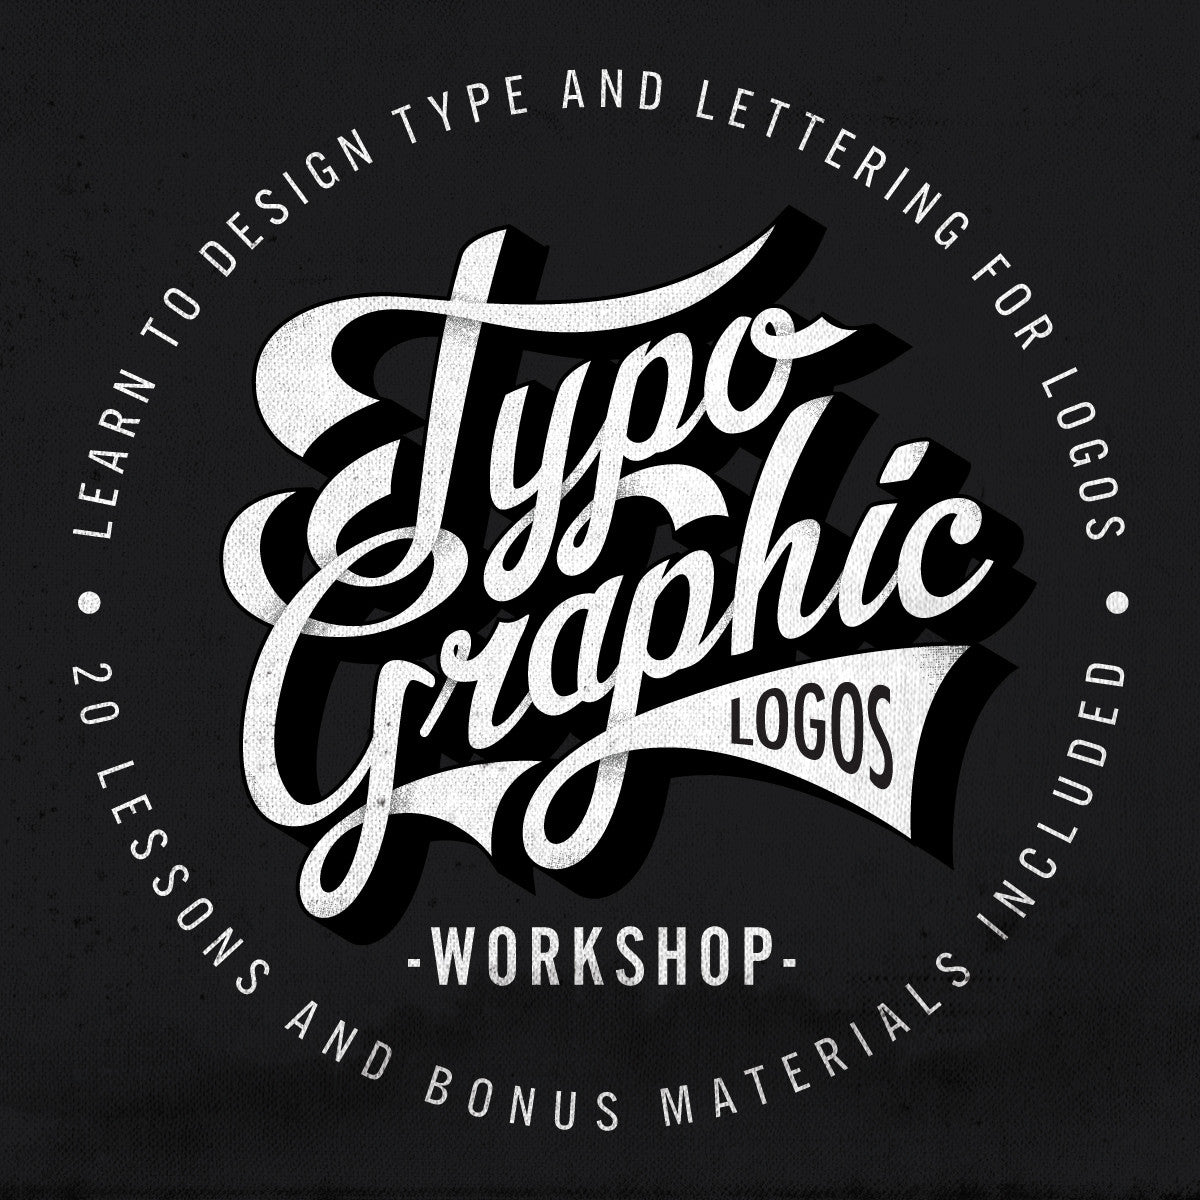 Workshop Logos - 53+ Best Workshop Logo Ideas. Free Workshop Logo Maker. |  99designs